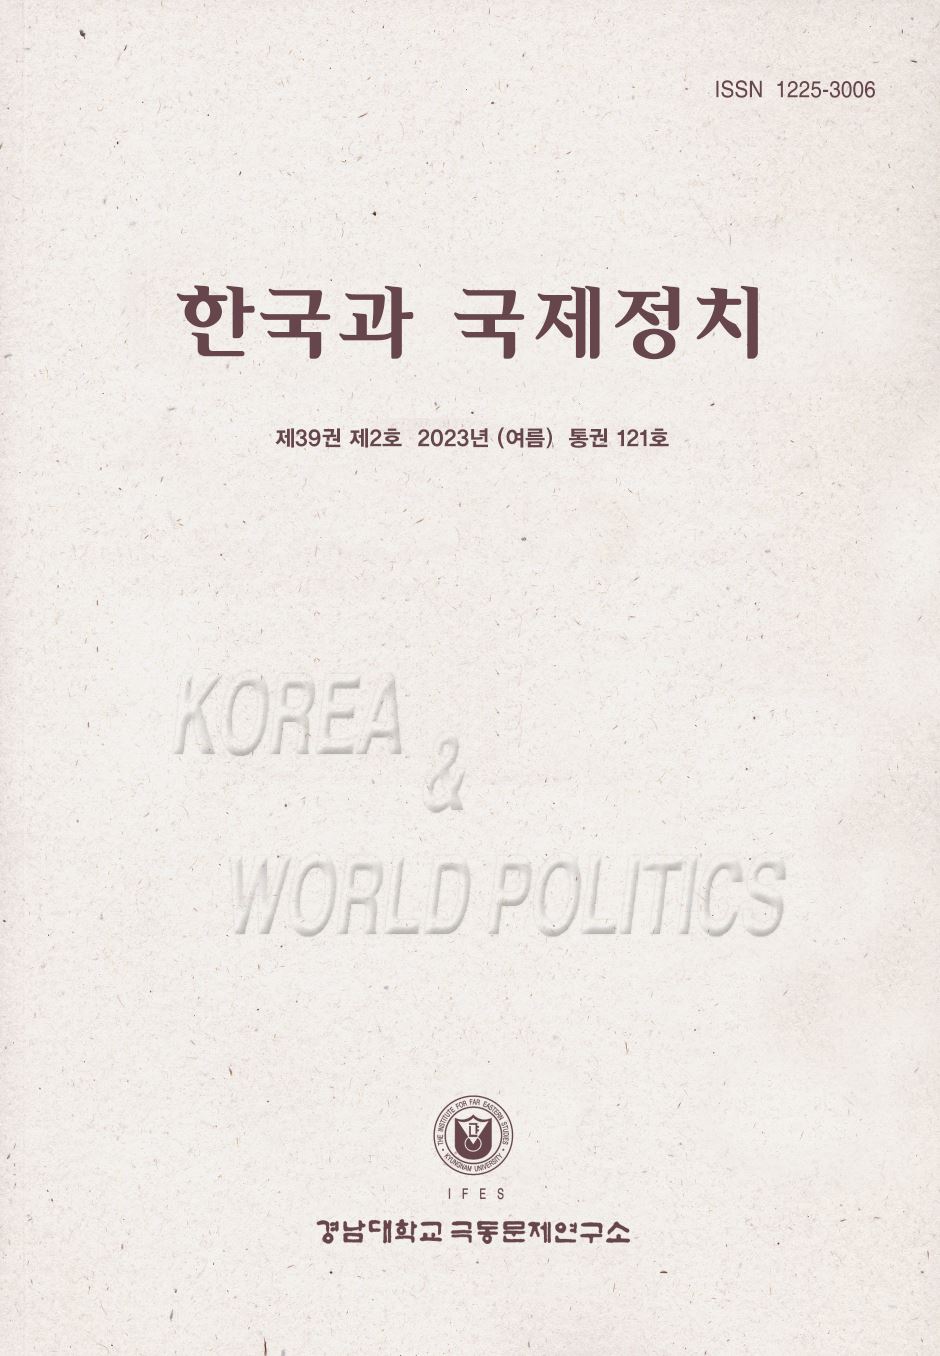 Korea and World Politics, Vol.39, No.2